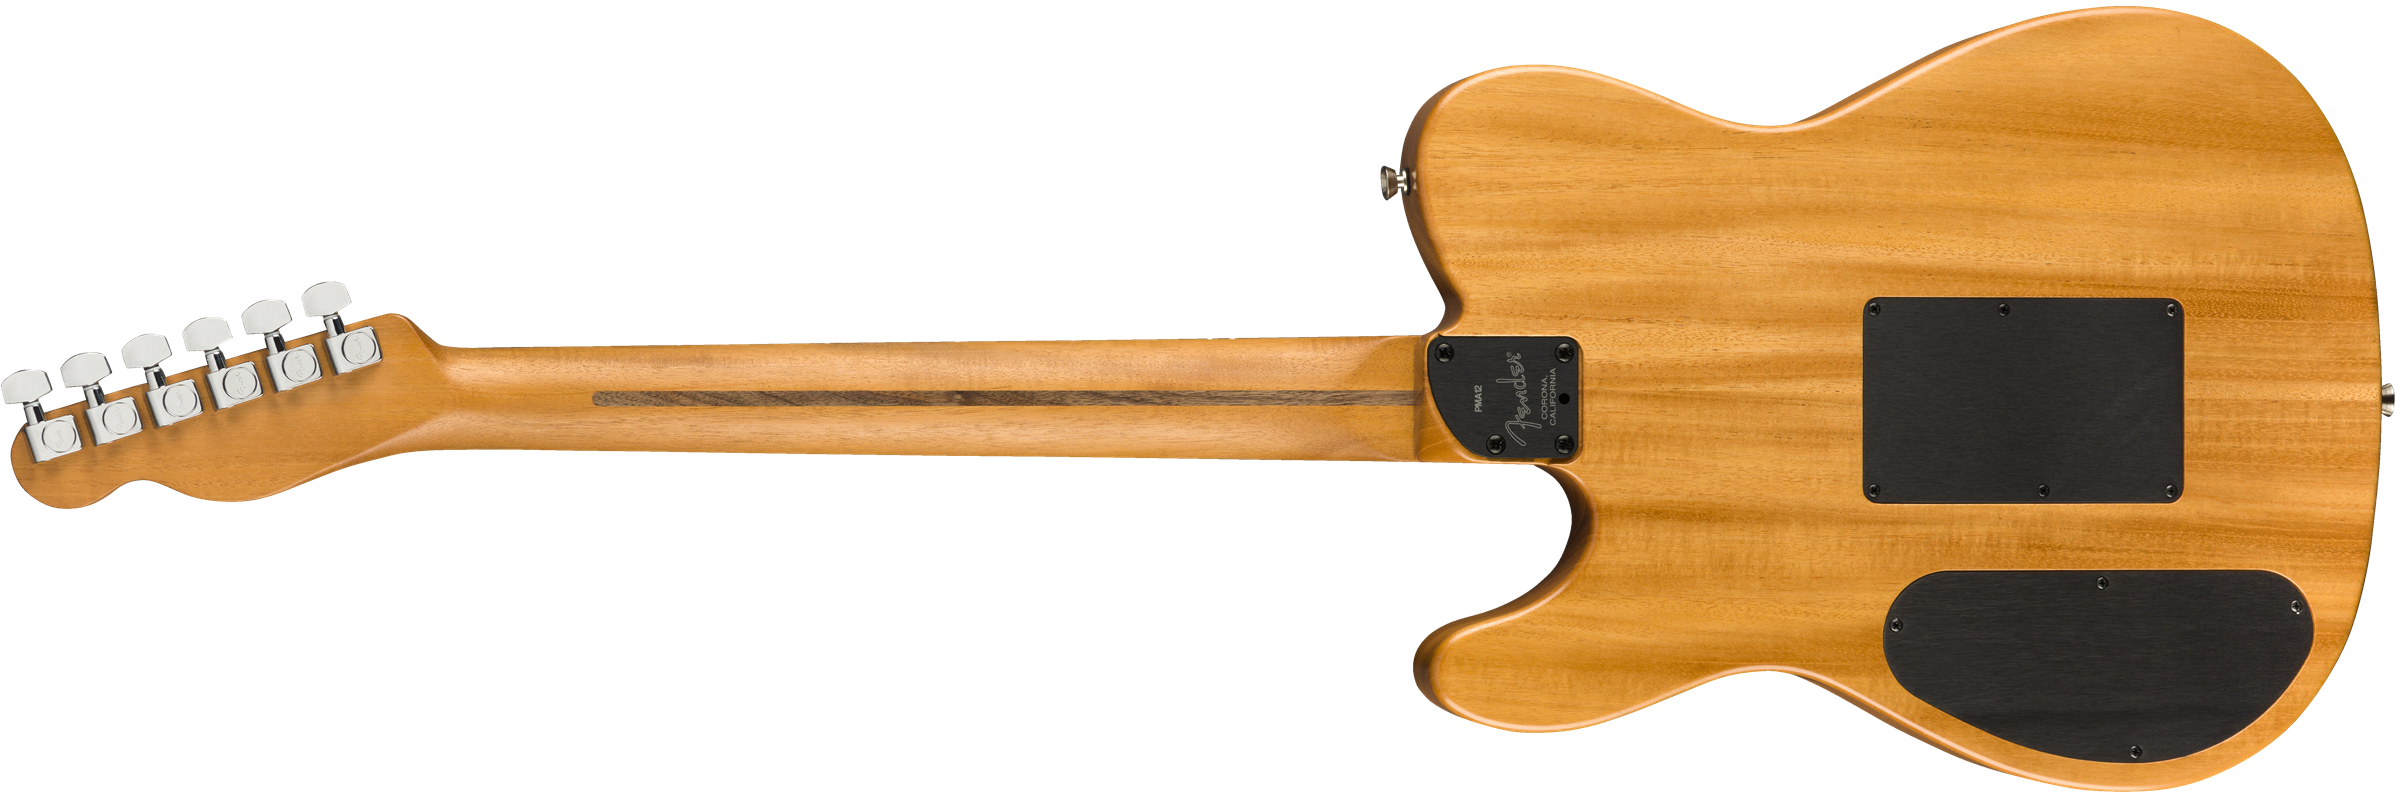 Fender Tele American Acoustasonic Usa Eb - Sunburst - Westerngitarre & electro - Variation 1